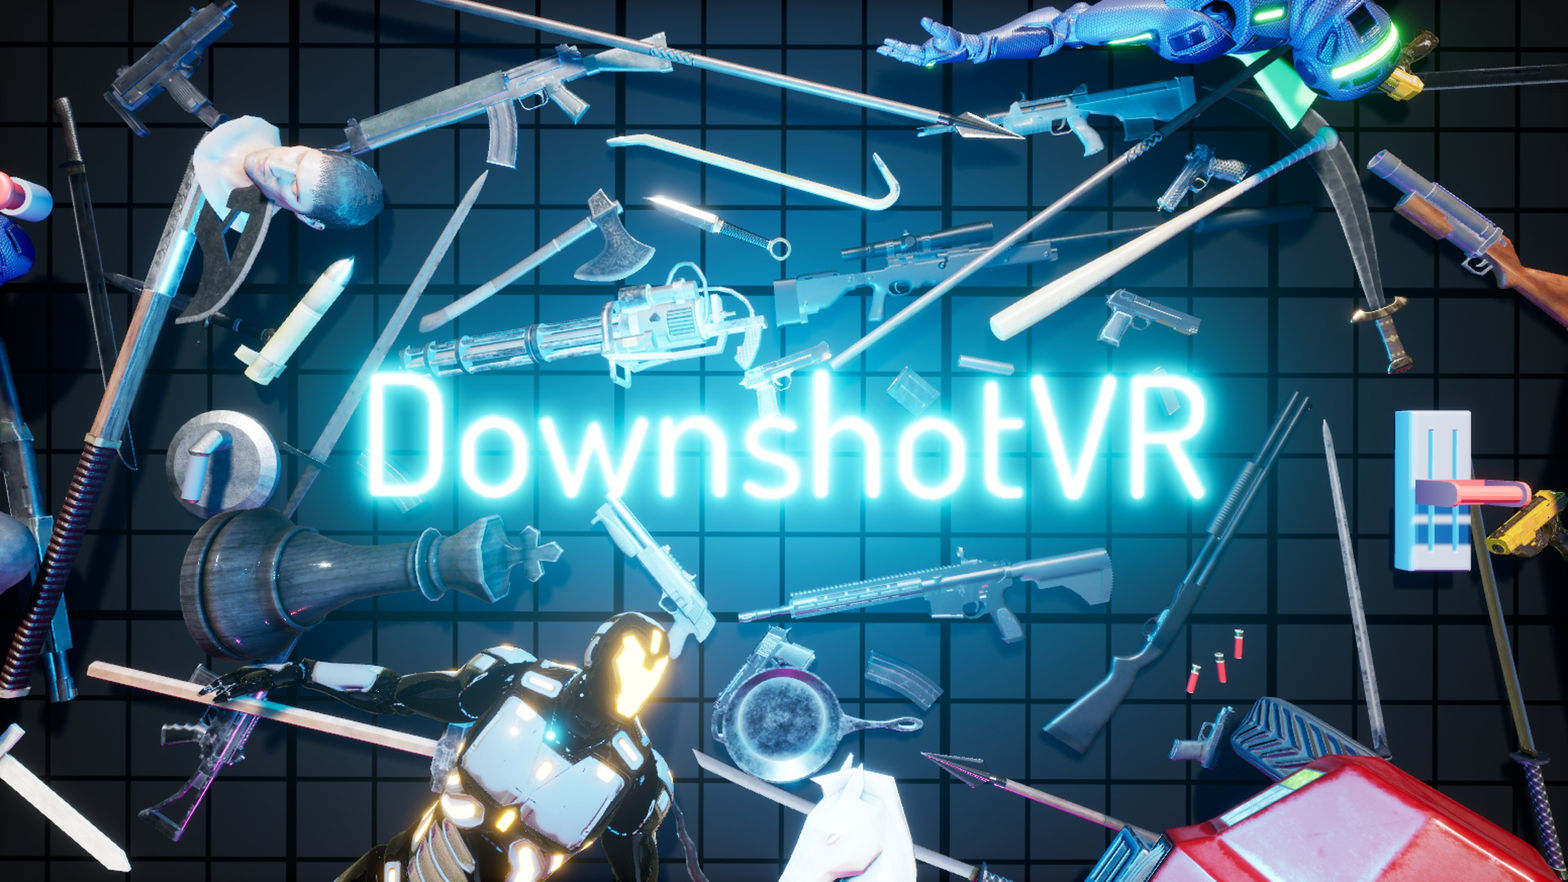 Downshot VR